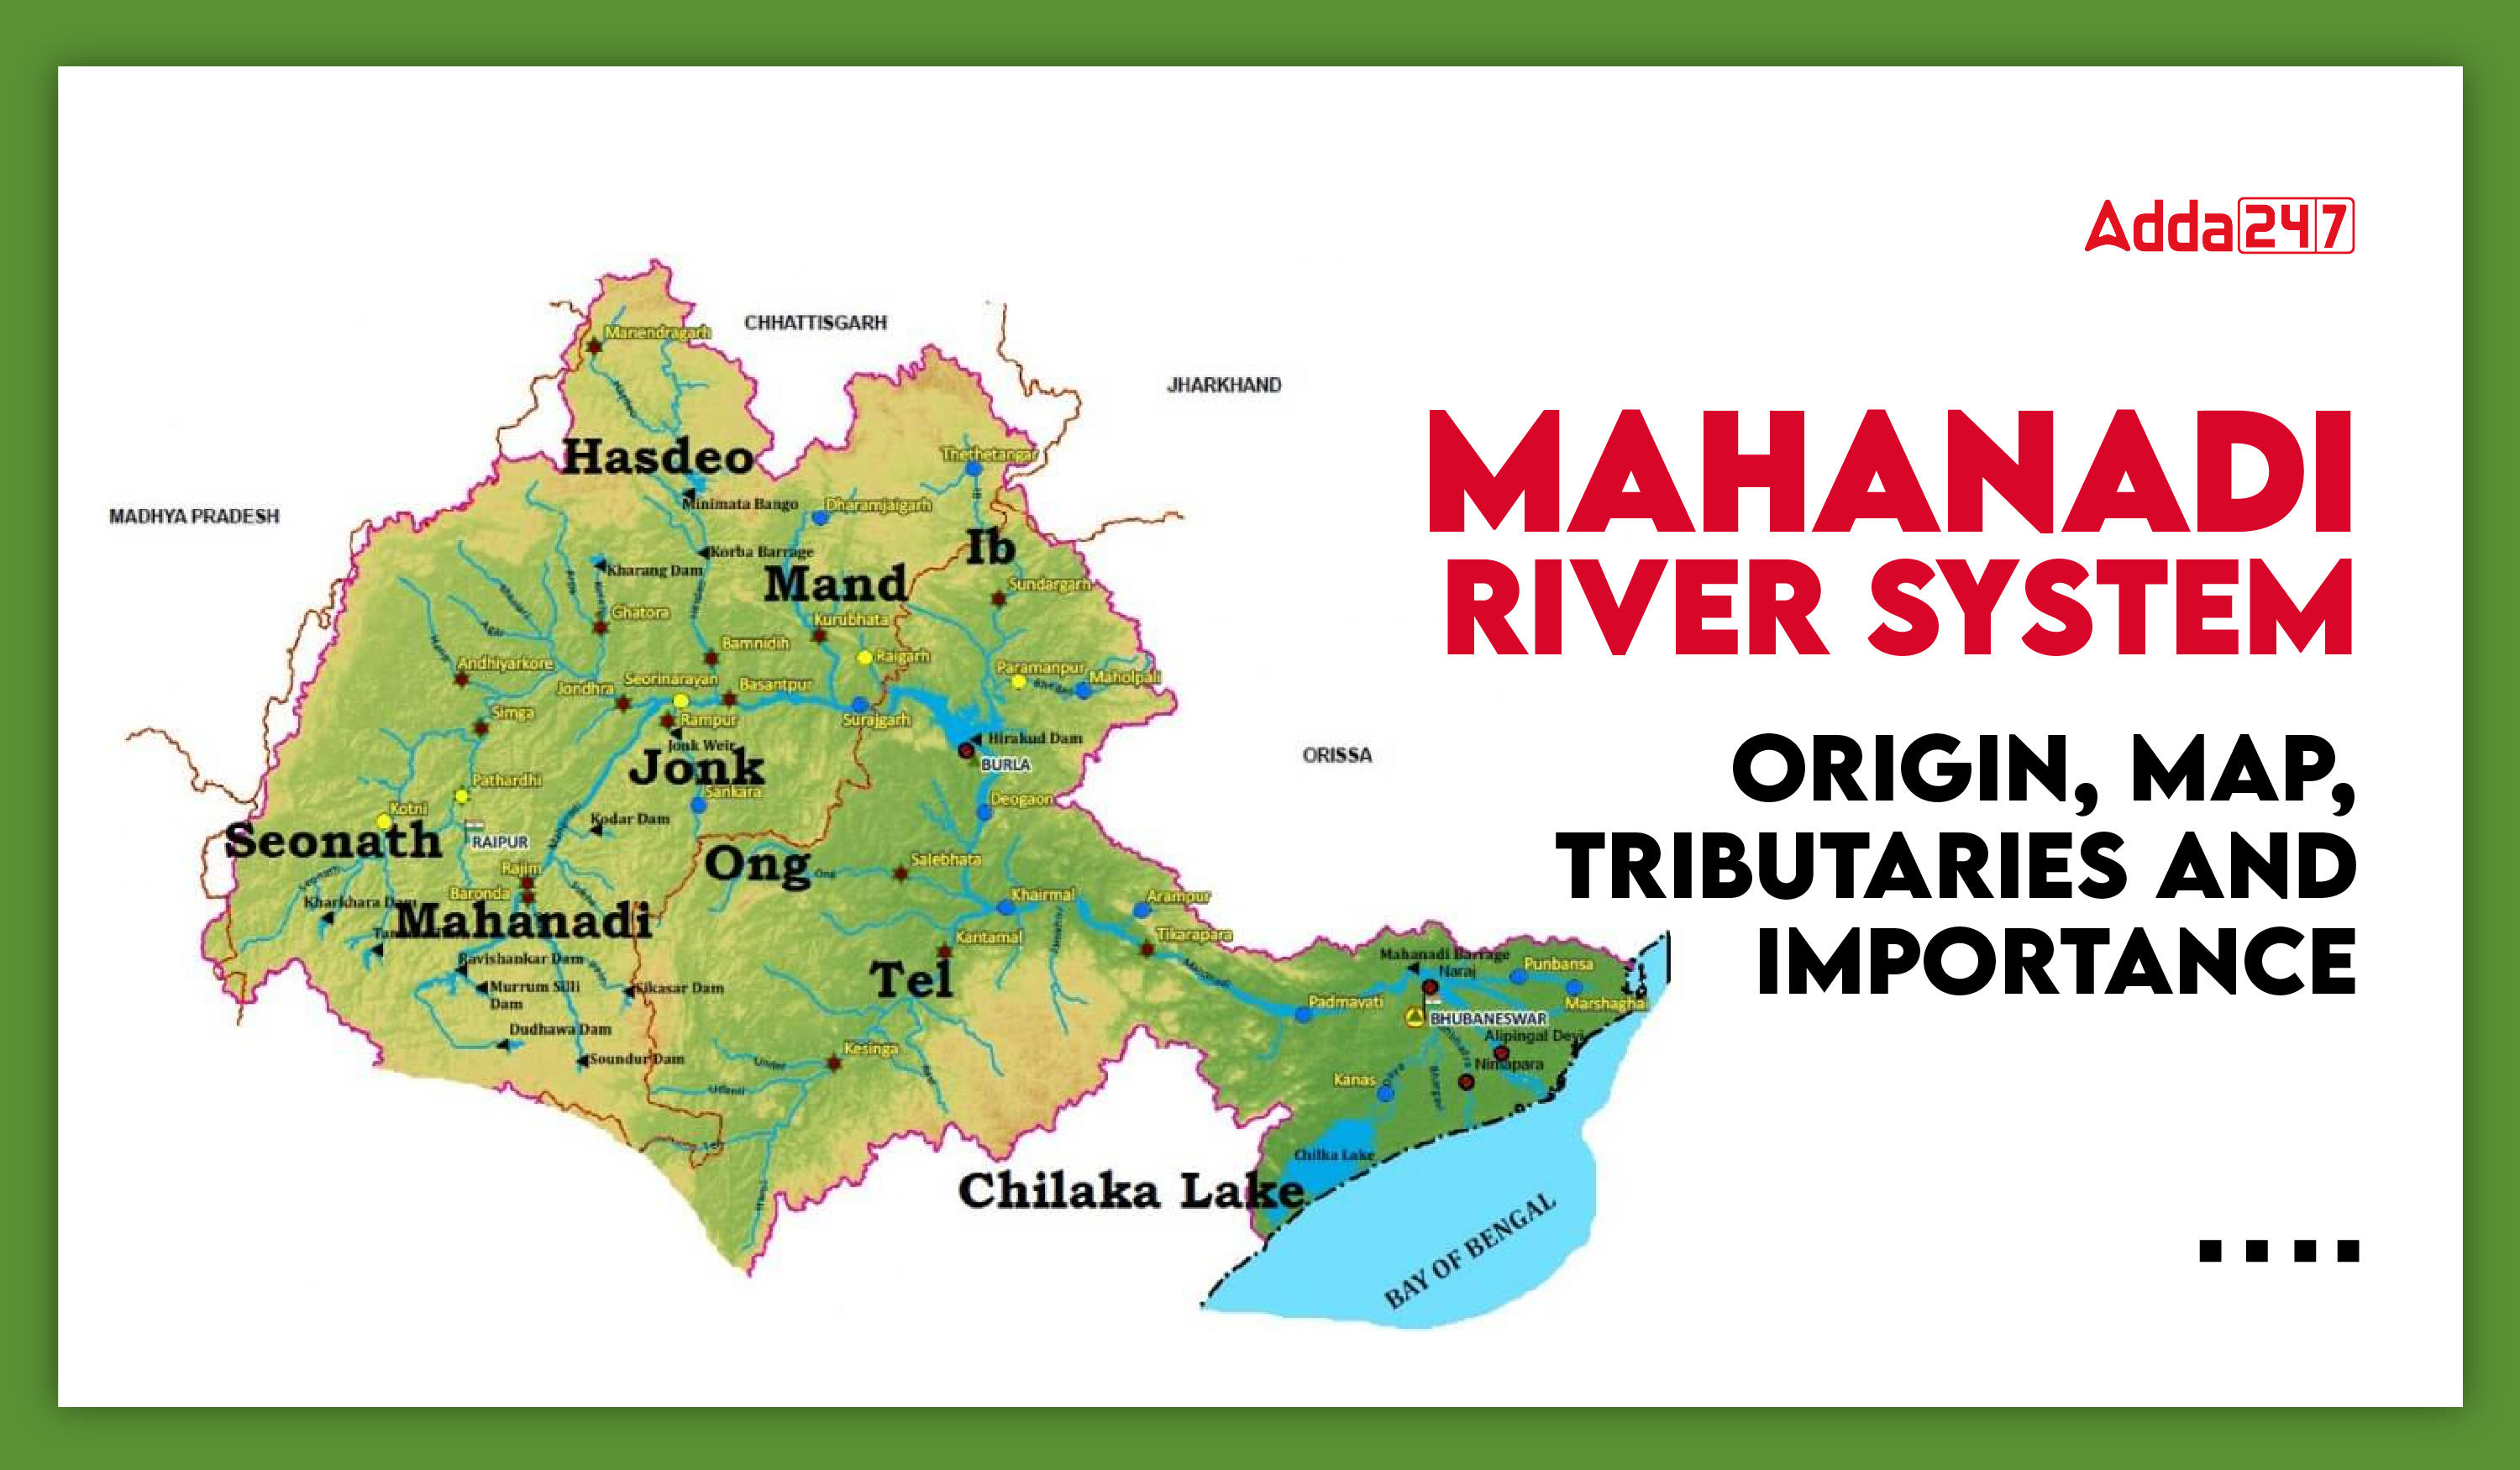 Mahanadi River System: Origin, Map, Tributaries and Importance